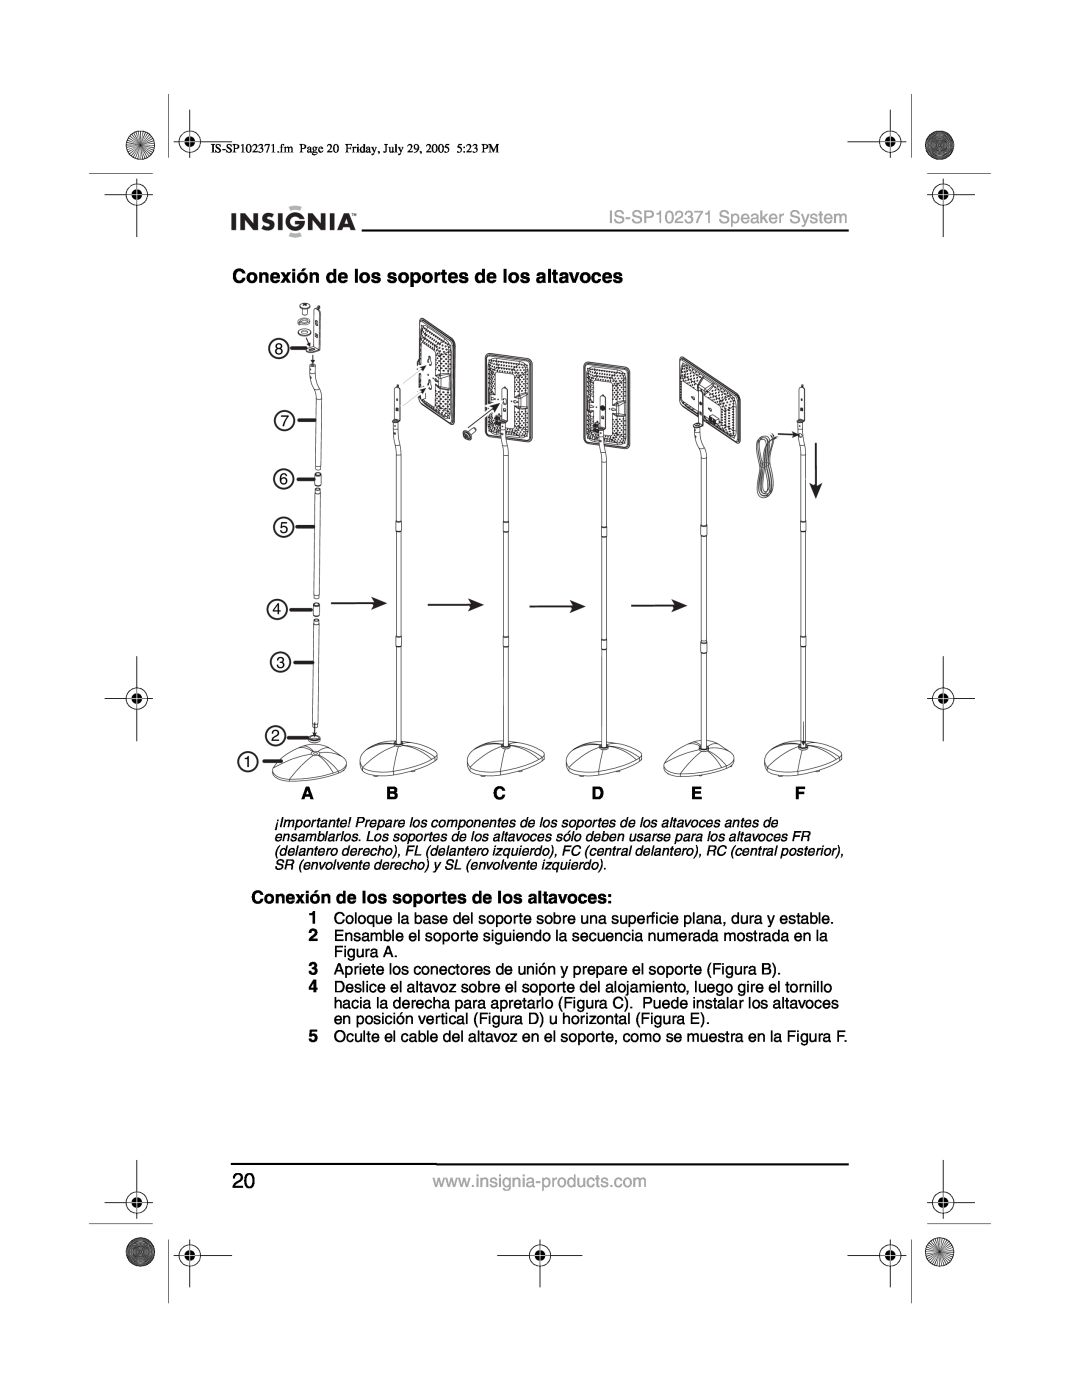 Insignia manual Conexión de los soportes de los altavoces, IS-SP102371Speaker System, A B C D E F 